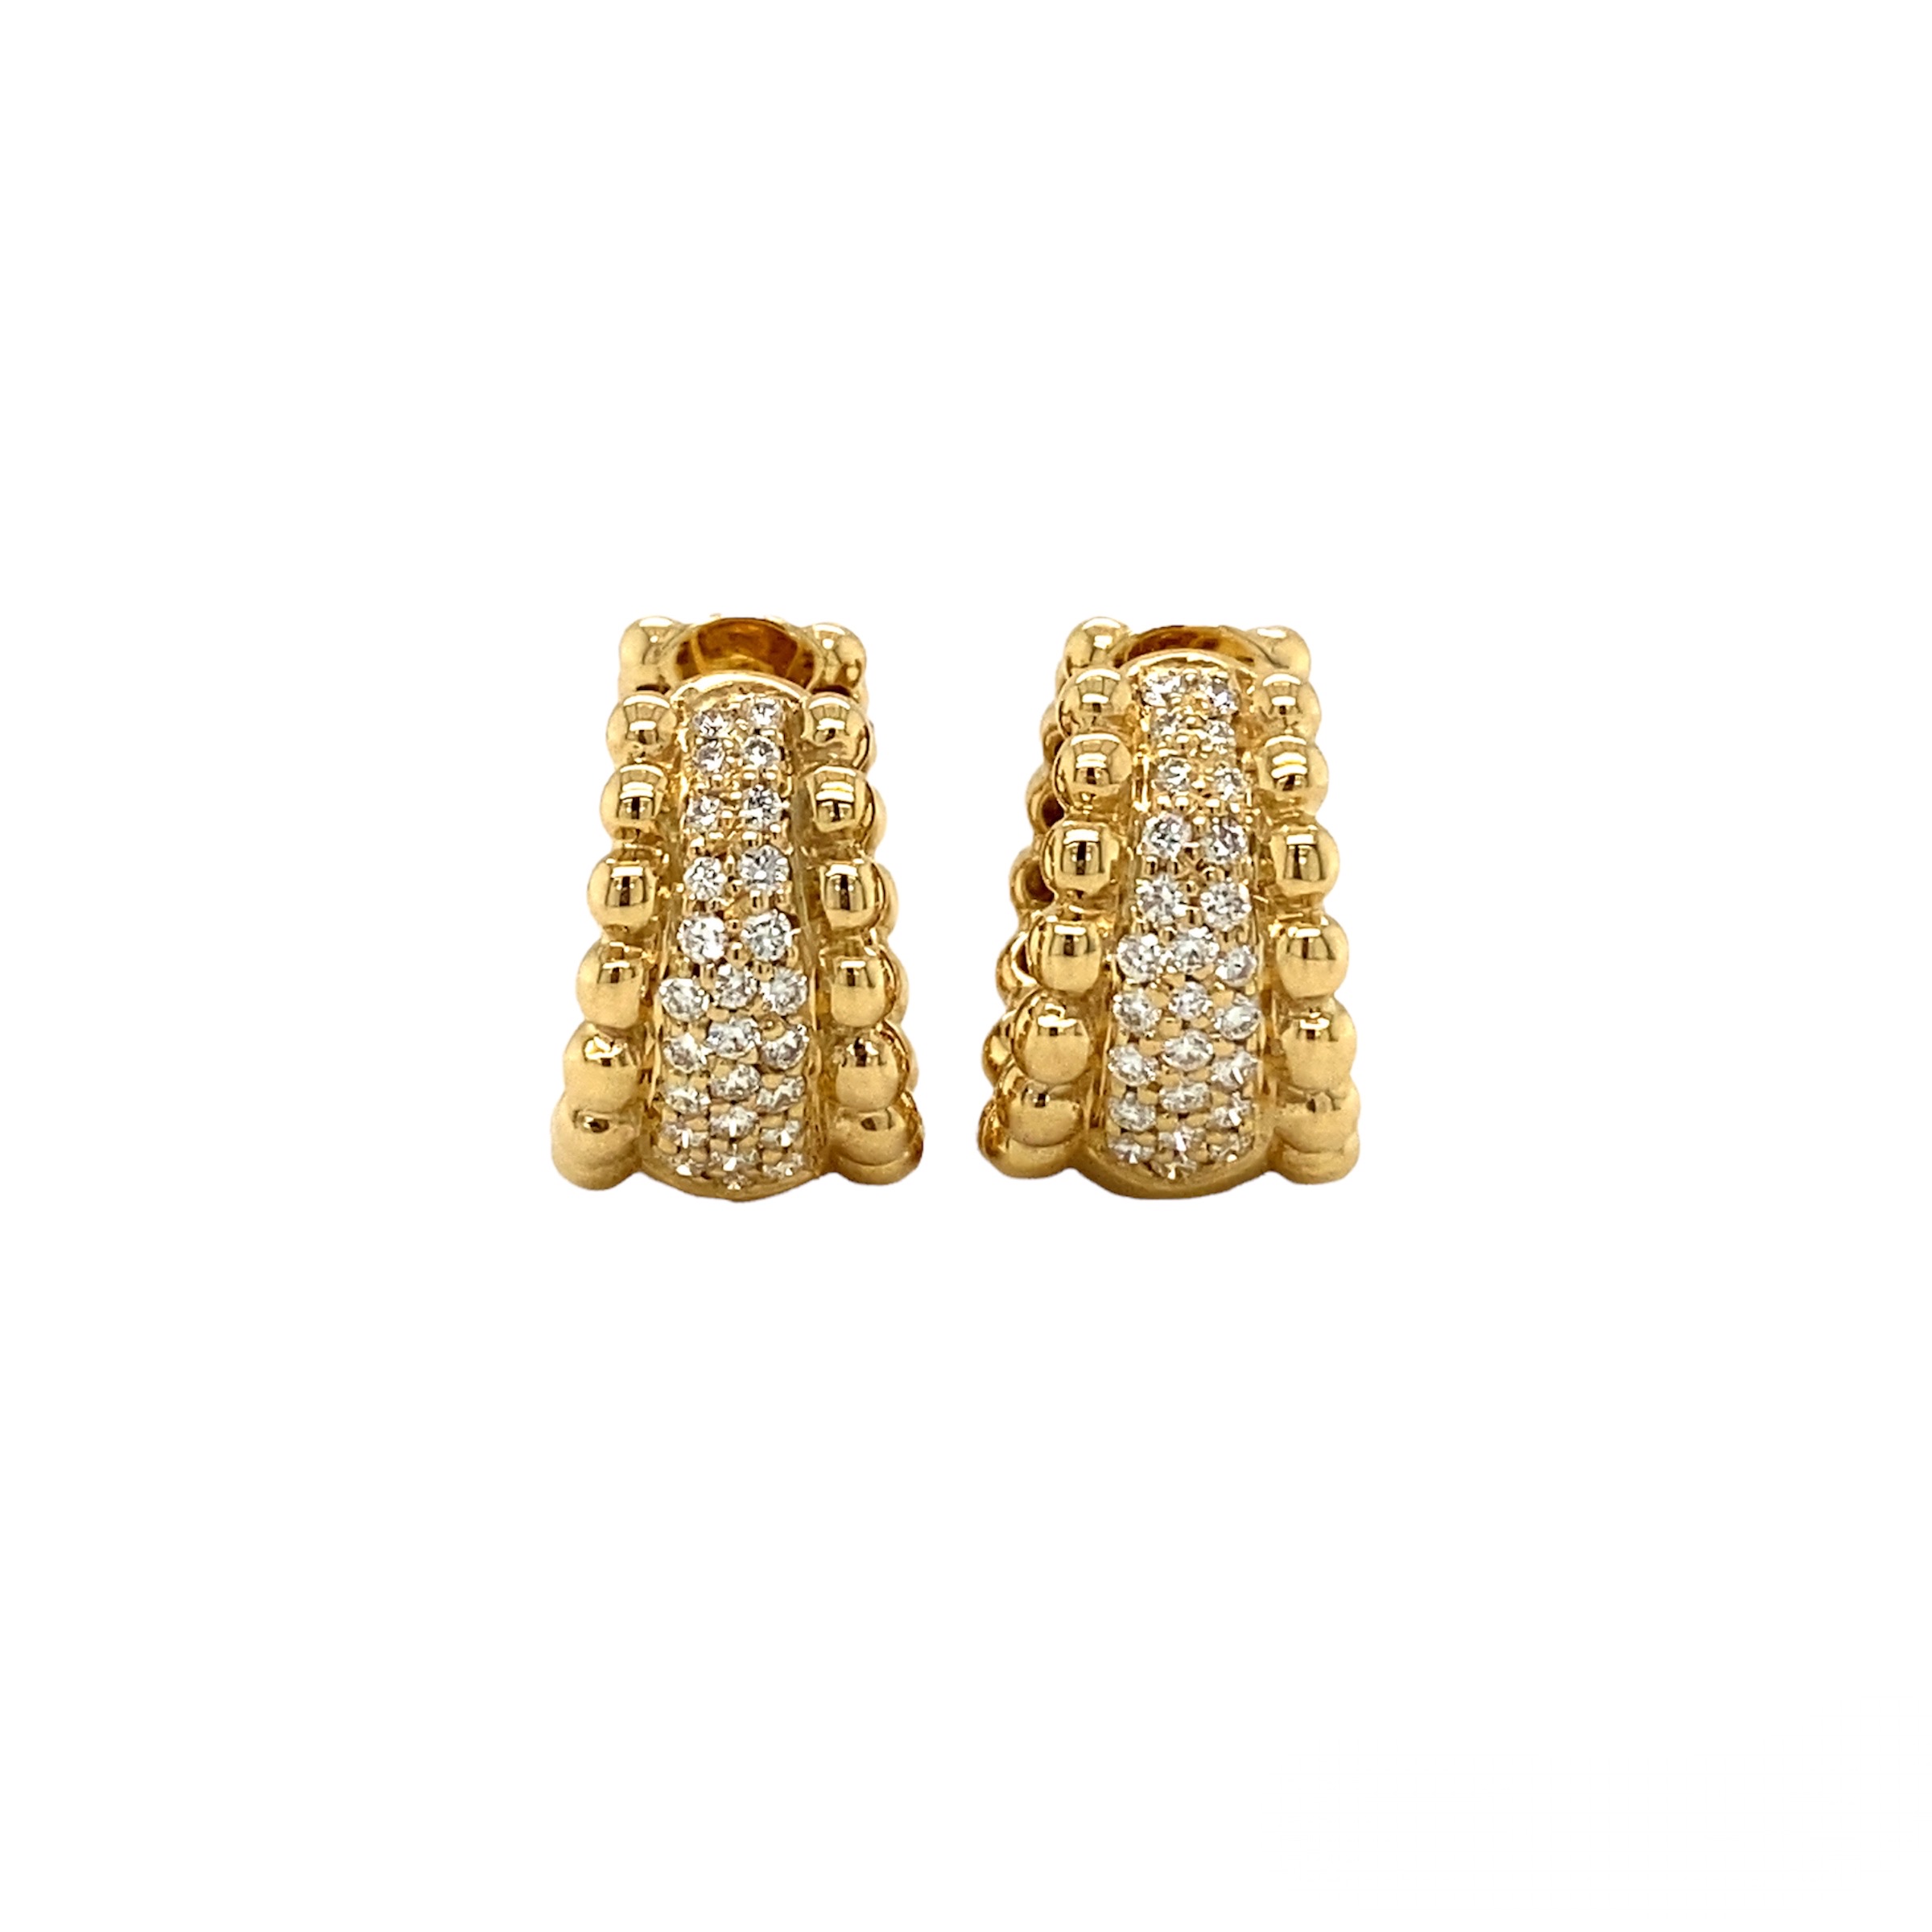 Moti gold earrings for girls Tops _Online _MaherFashion_Mumbai